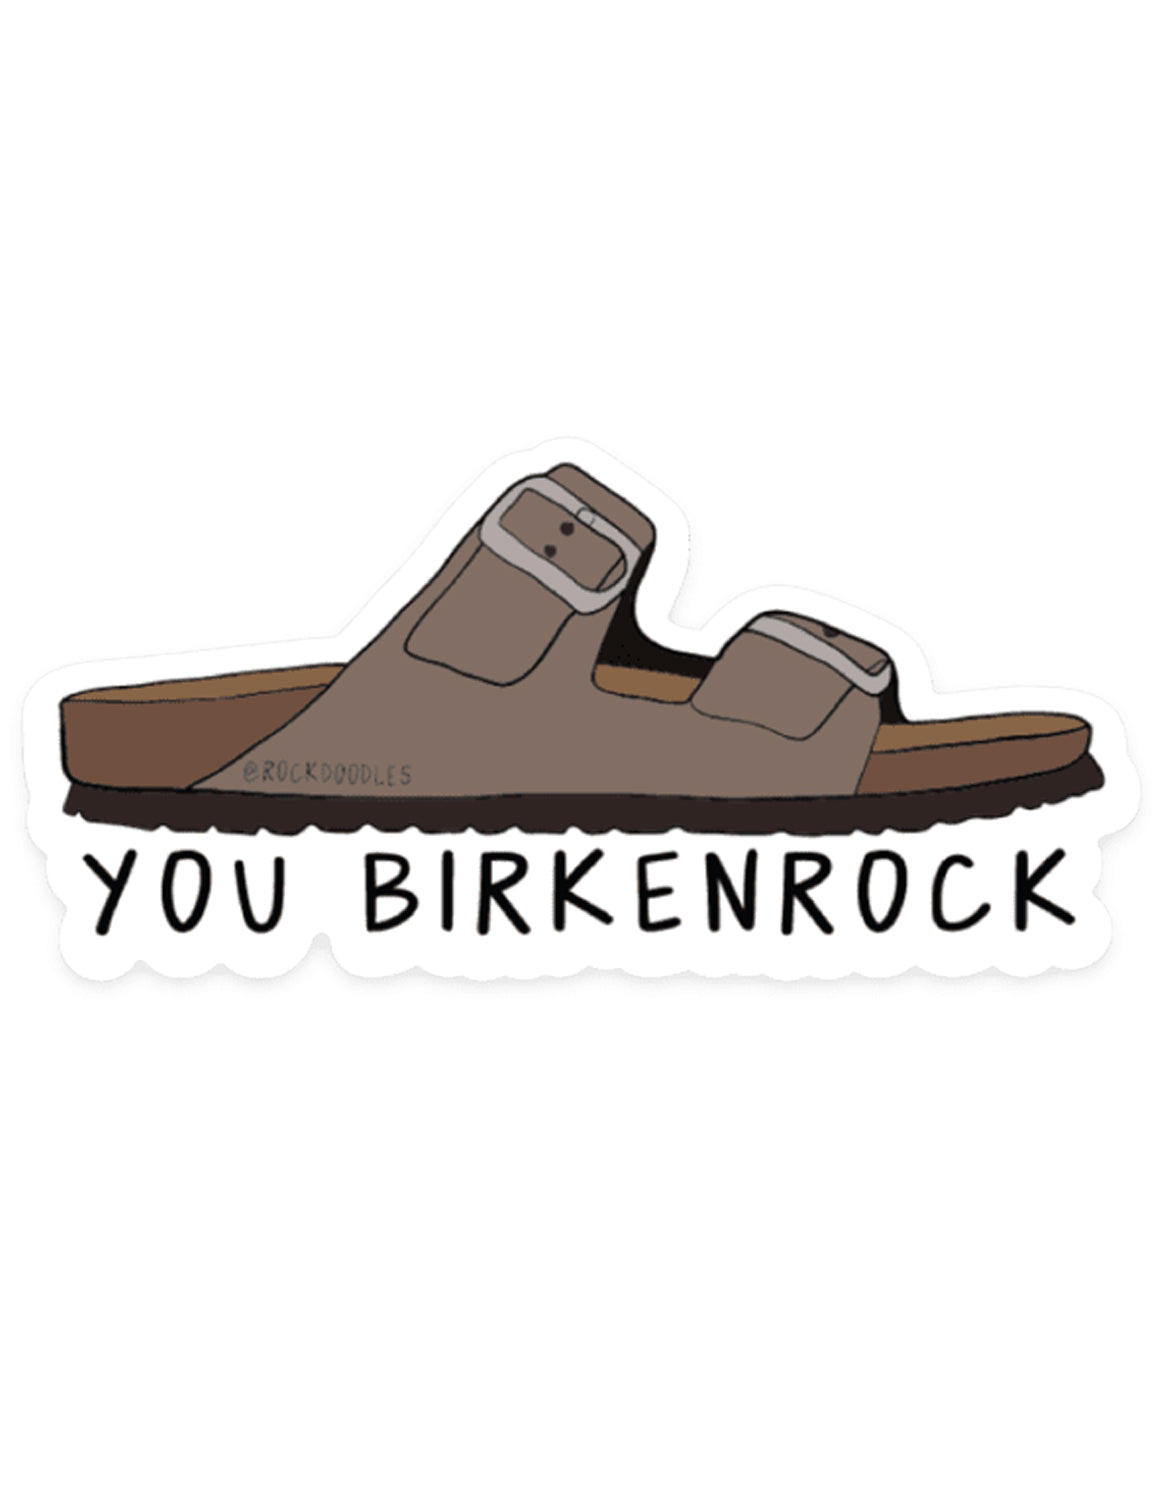 You Birkenrock Sticker - rockdoodles